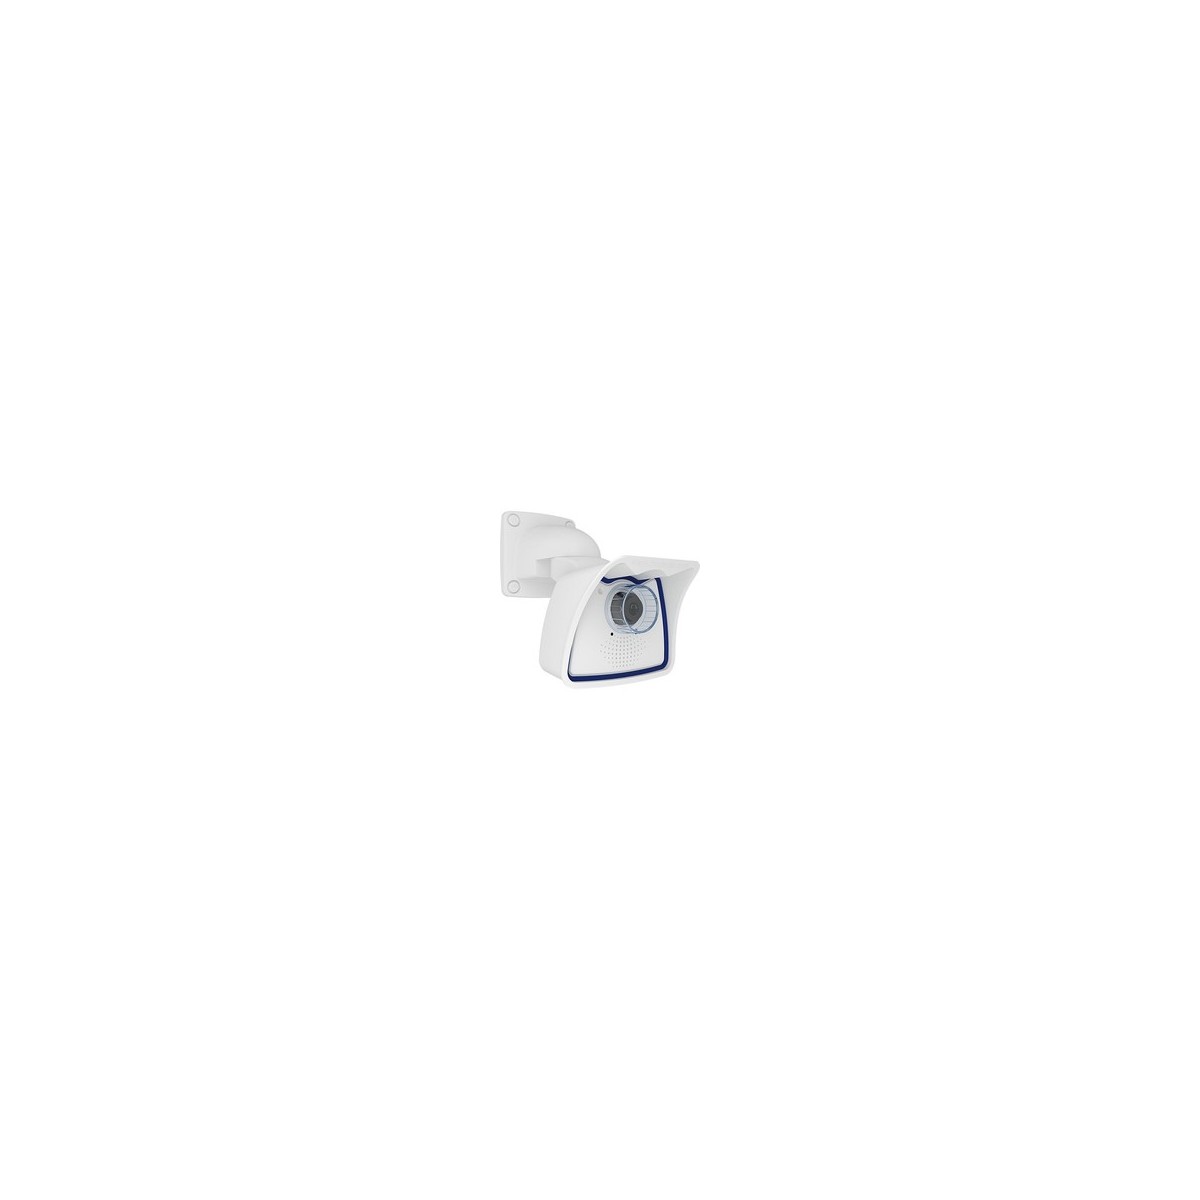 Mobotix Mx-M26B-6N041 - IP security camera - Indoor  outdoor - Wired - EN55032: 2012 EN55022: 2010 EN55024: 2010 EN50121-4: 2015